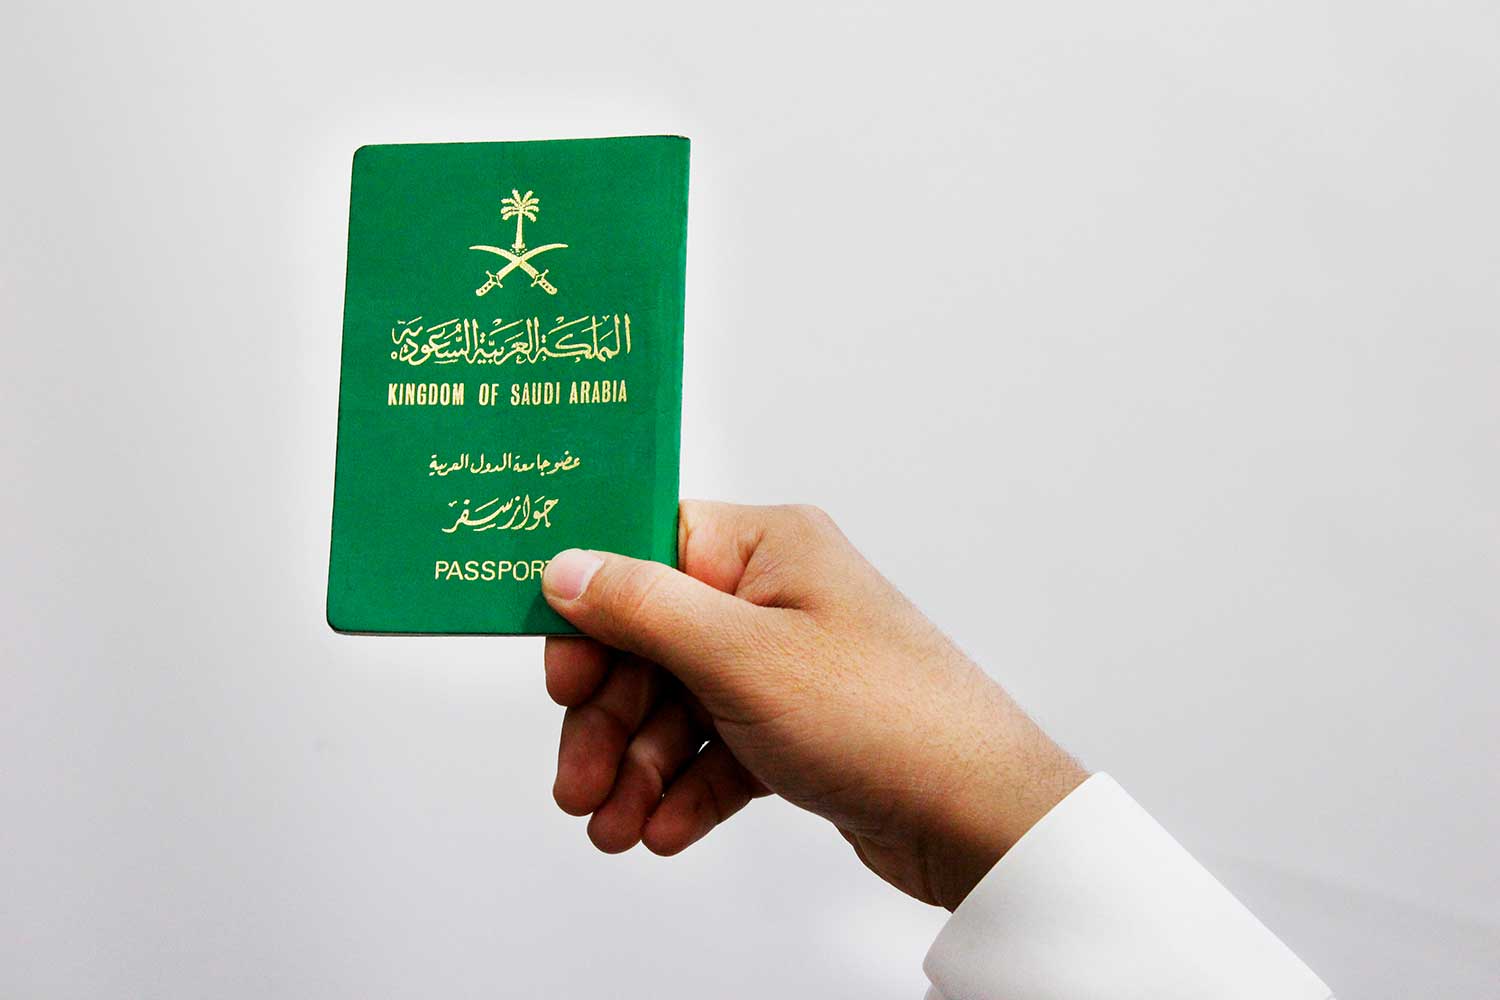 виза саудовская аравия